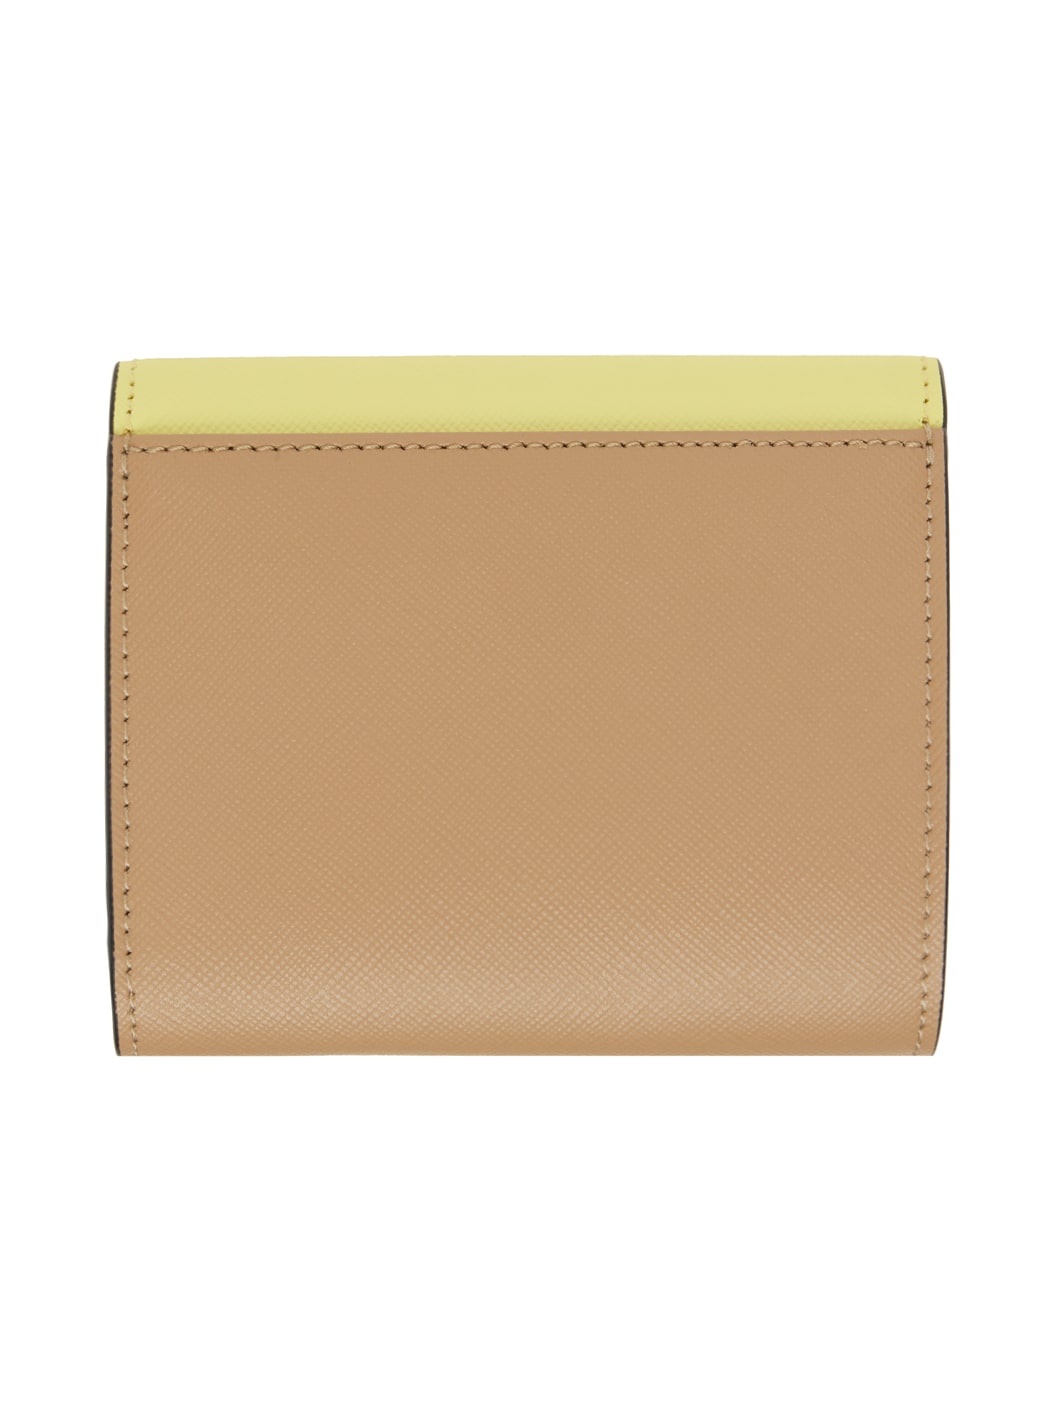 Multicolor Saffiano Leather Wallet - 2